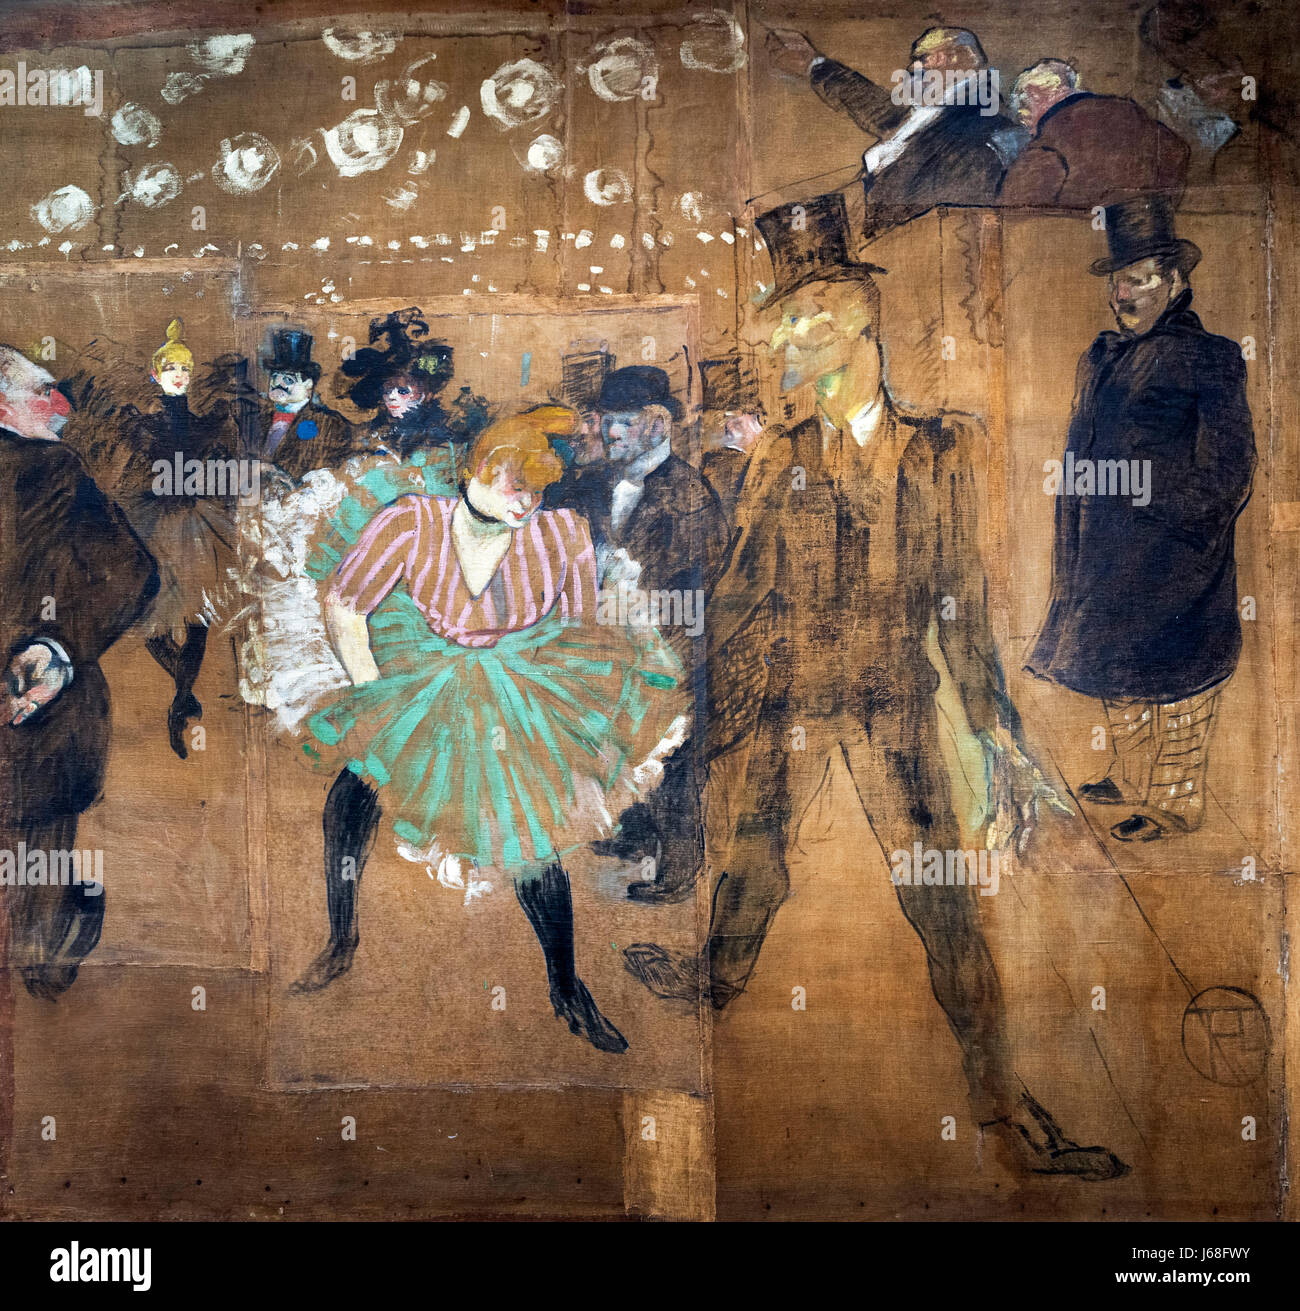 Toulouse-Lautrec Gemälde. "La Danse au Moulin Rouge" (Tanz im Moulin Rouge) von Henri de Toulouse-Lautrec (1864-1901), Öl auf Leinwand, 1895. Malerei ist auch bekannt als "La Goulue et Valentin le Désossé" Stockfoto